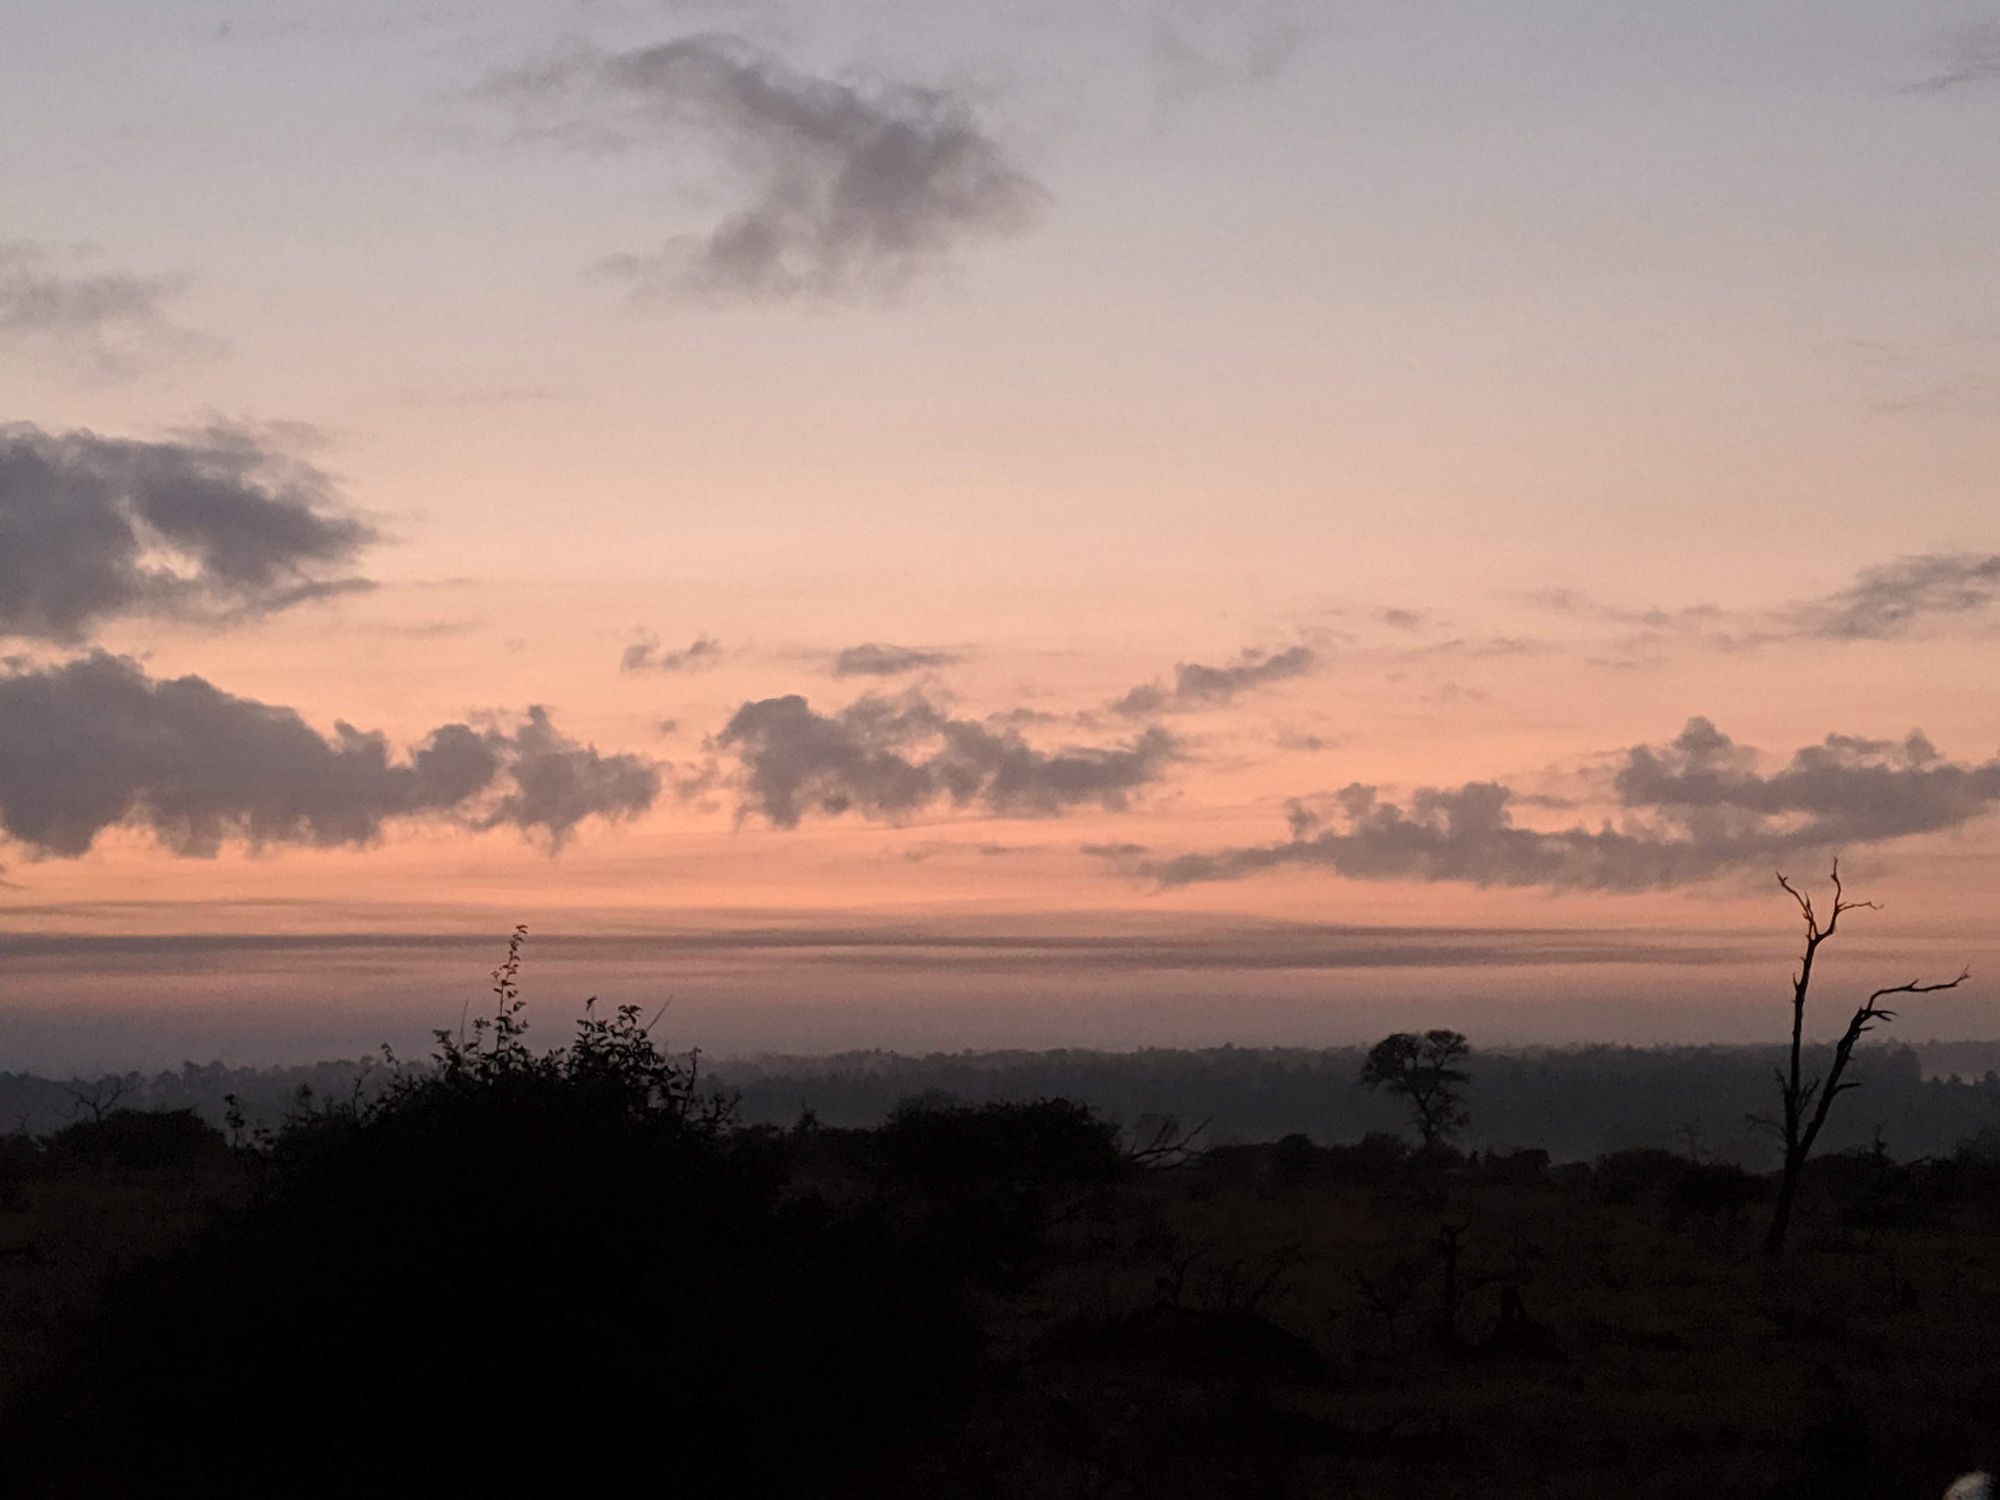 sunrise at Kruger National Park